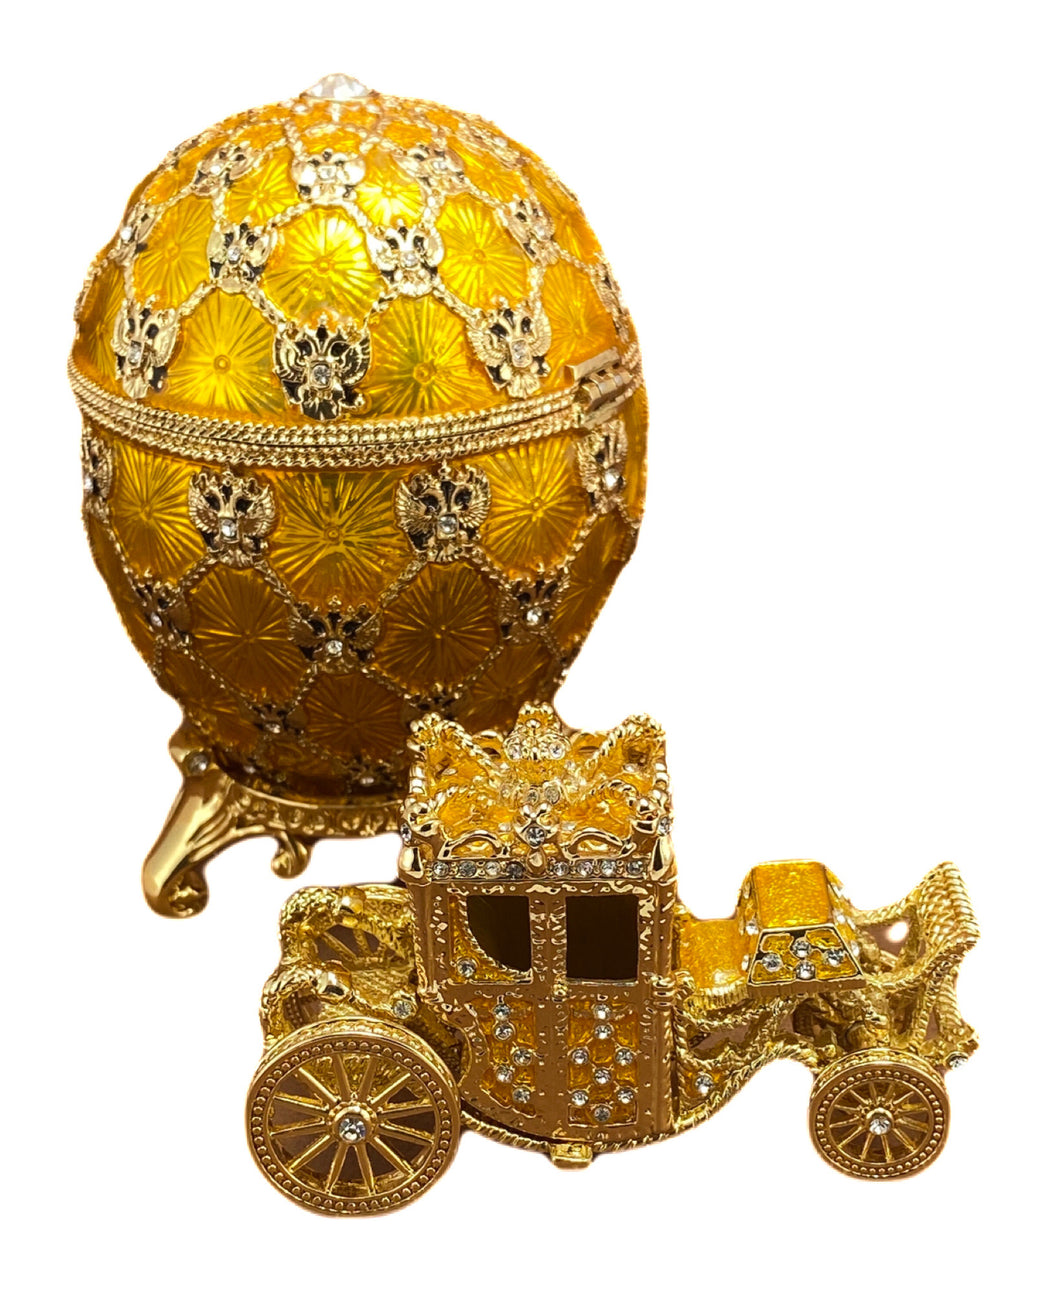 Huevo de Faberge. Carreta Imperial